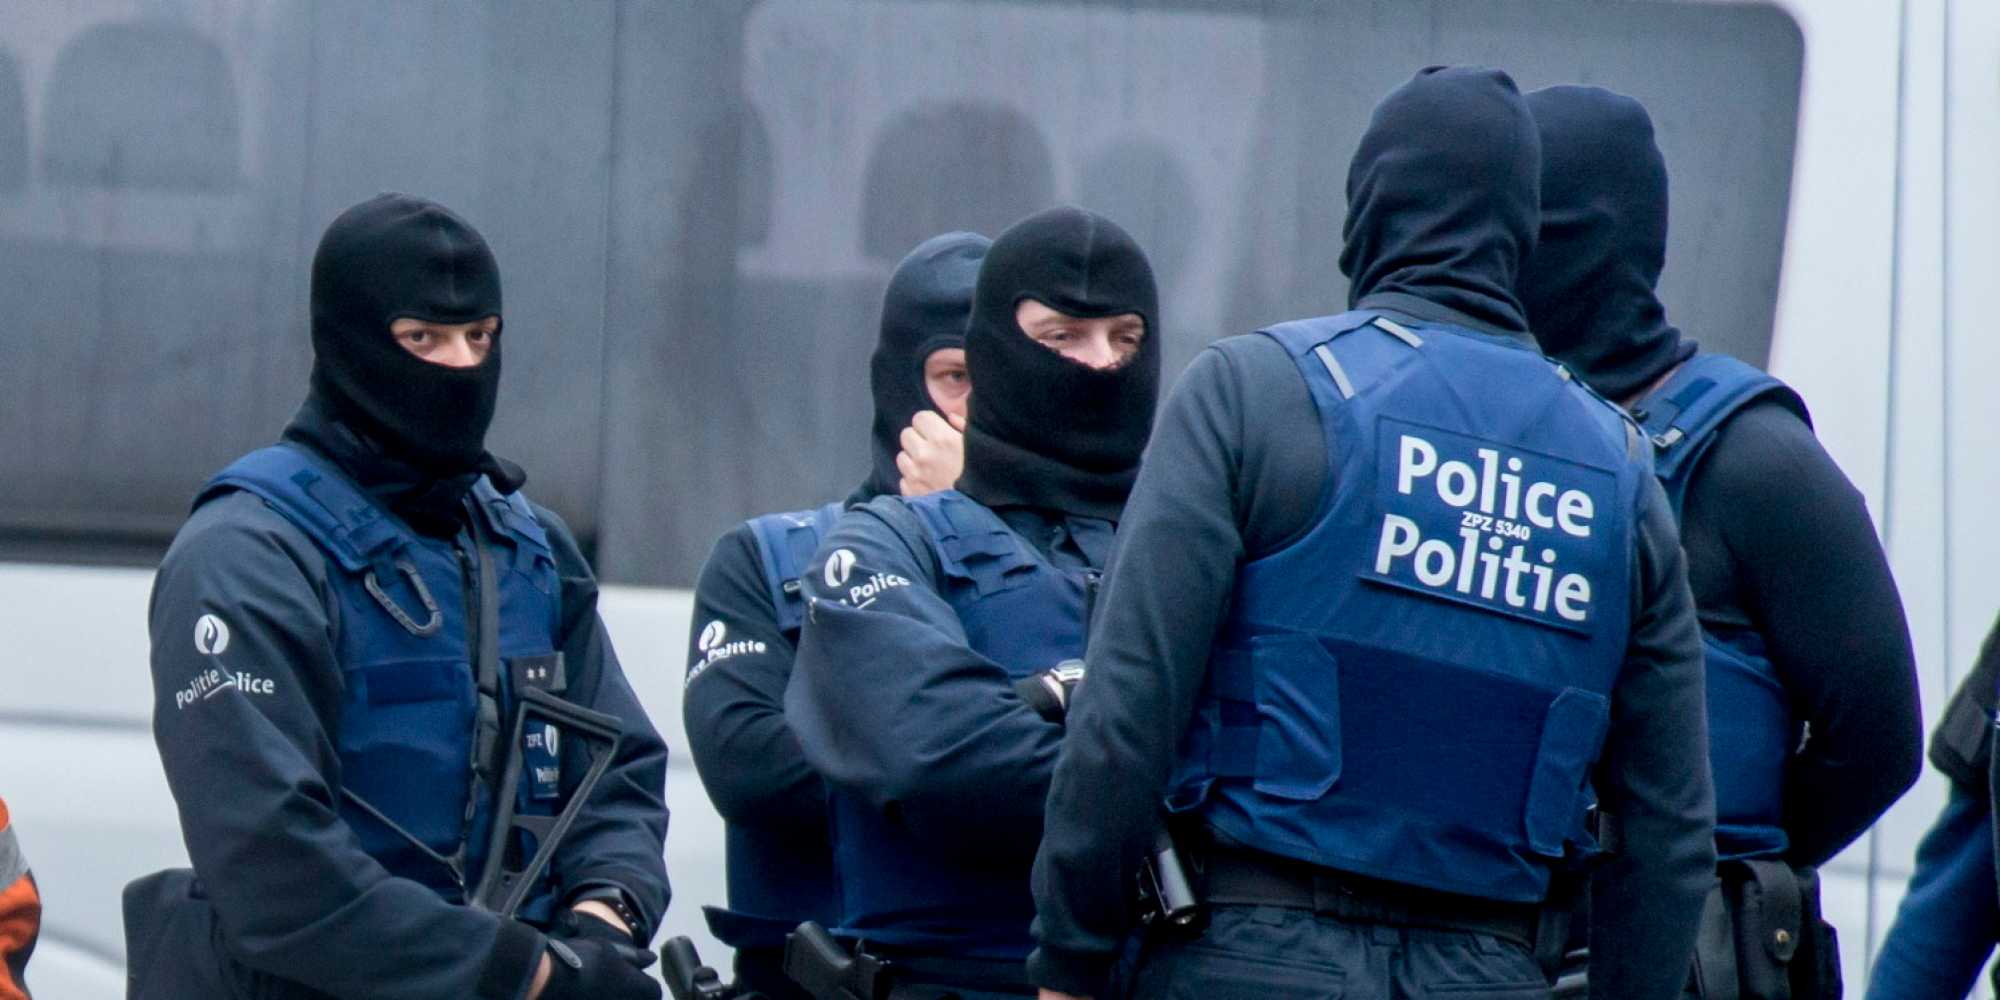 Belgio, arrestati due fratelli sospettati di progettare attentati terroristici